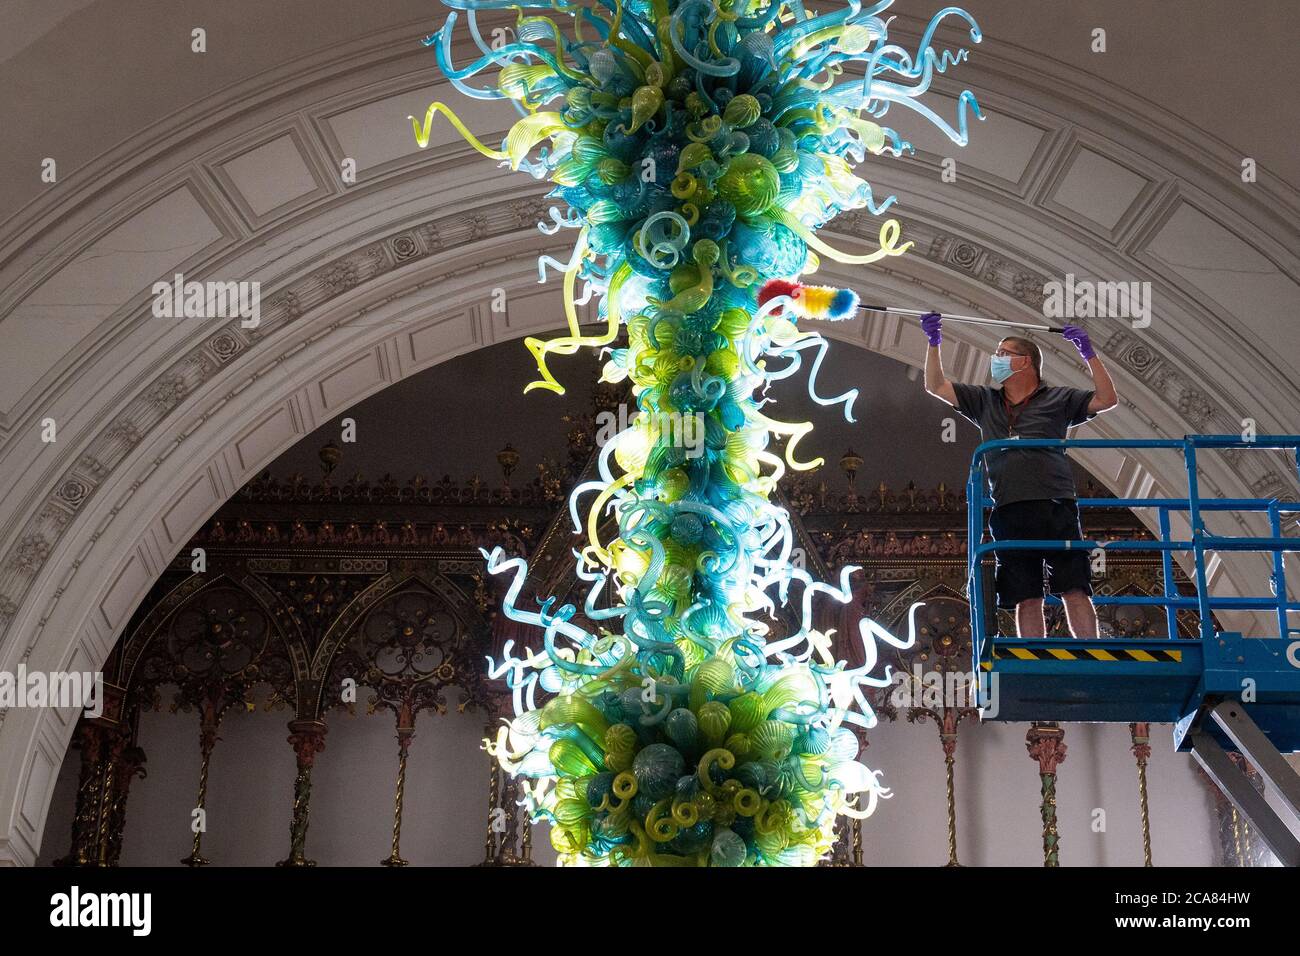 Museumstechniker Andy Monk reinigt den 27 Meter langen Rotunda-Kronleuchter von Dale Chihuly, der aus 1,300 blauen und grünen Glaselementen besteht, im Victoria and Albert Museum in London, während er sich auf die Wiedereröffnung am 6. August vorbereitet. Stockfoto